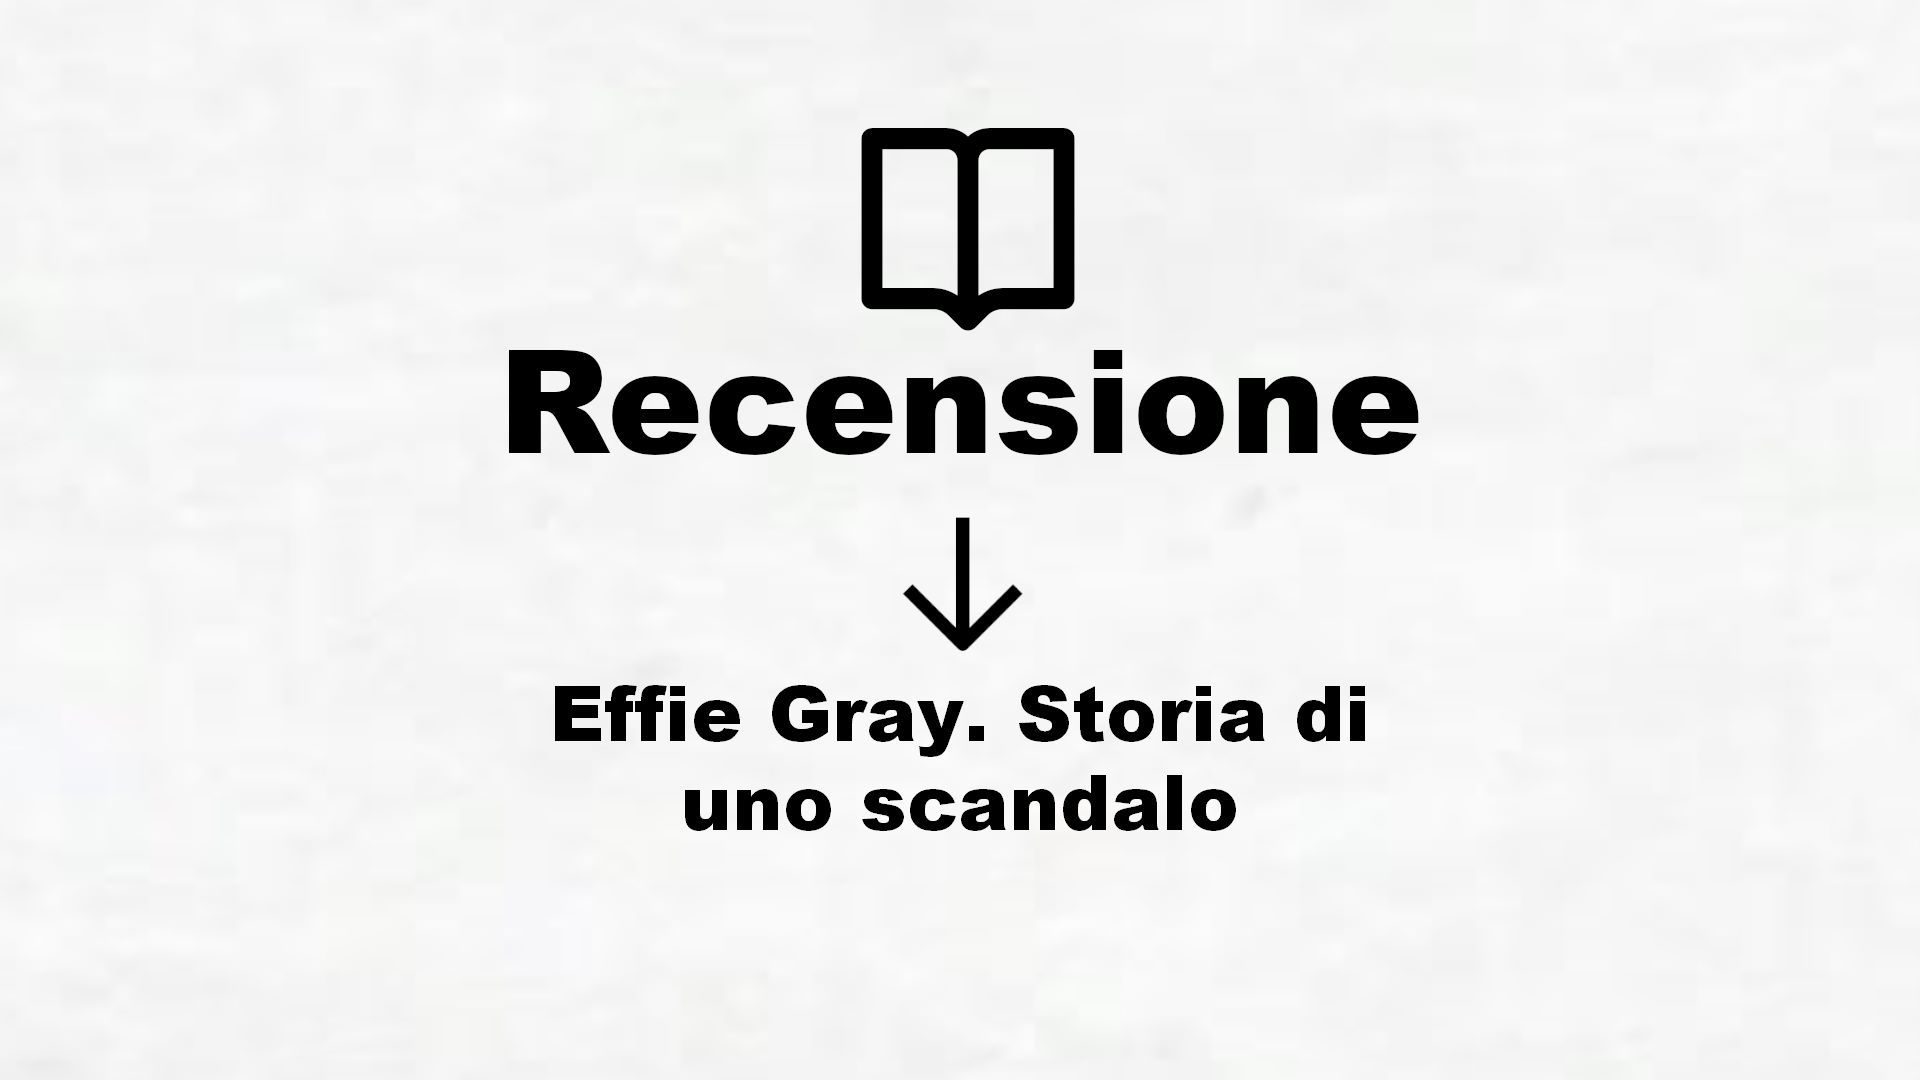 Effie Gray. Storia di uno scandalo – Recensione Libro